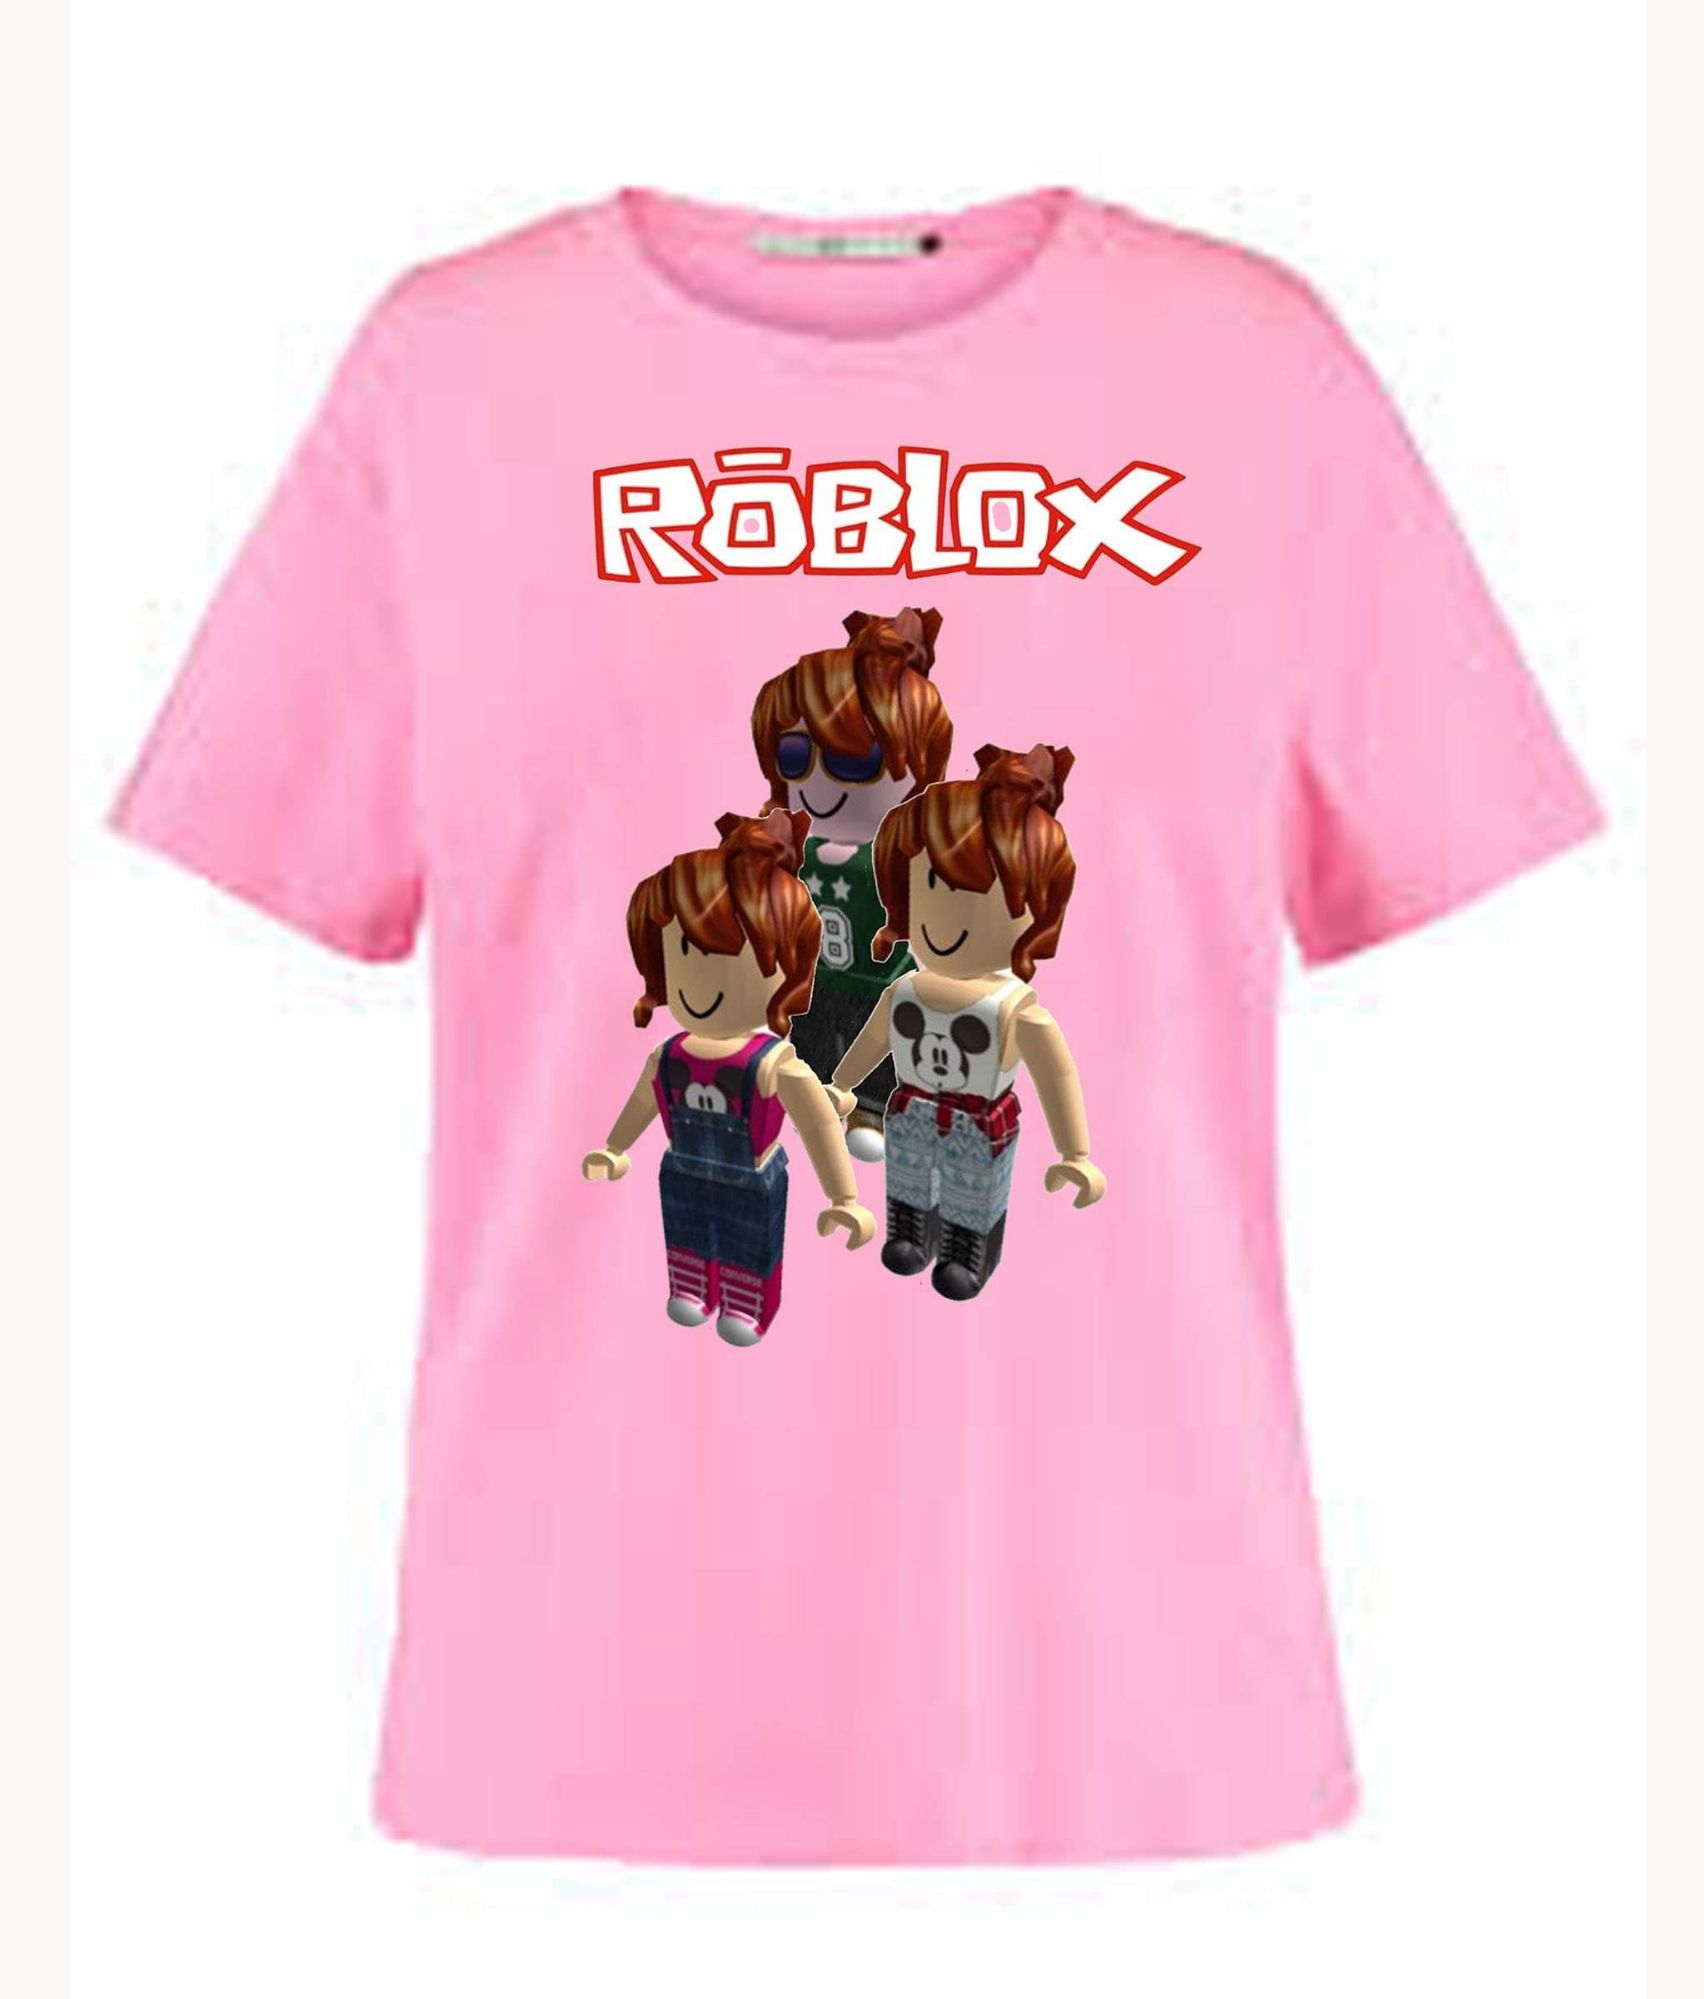 T-shirt cute - Roblox